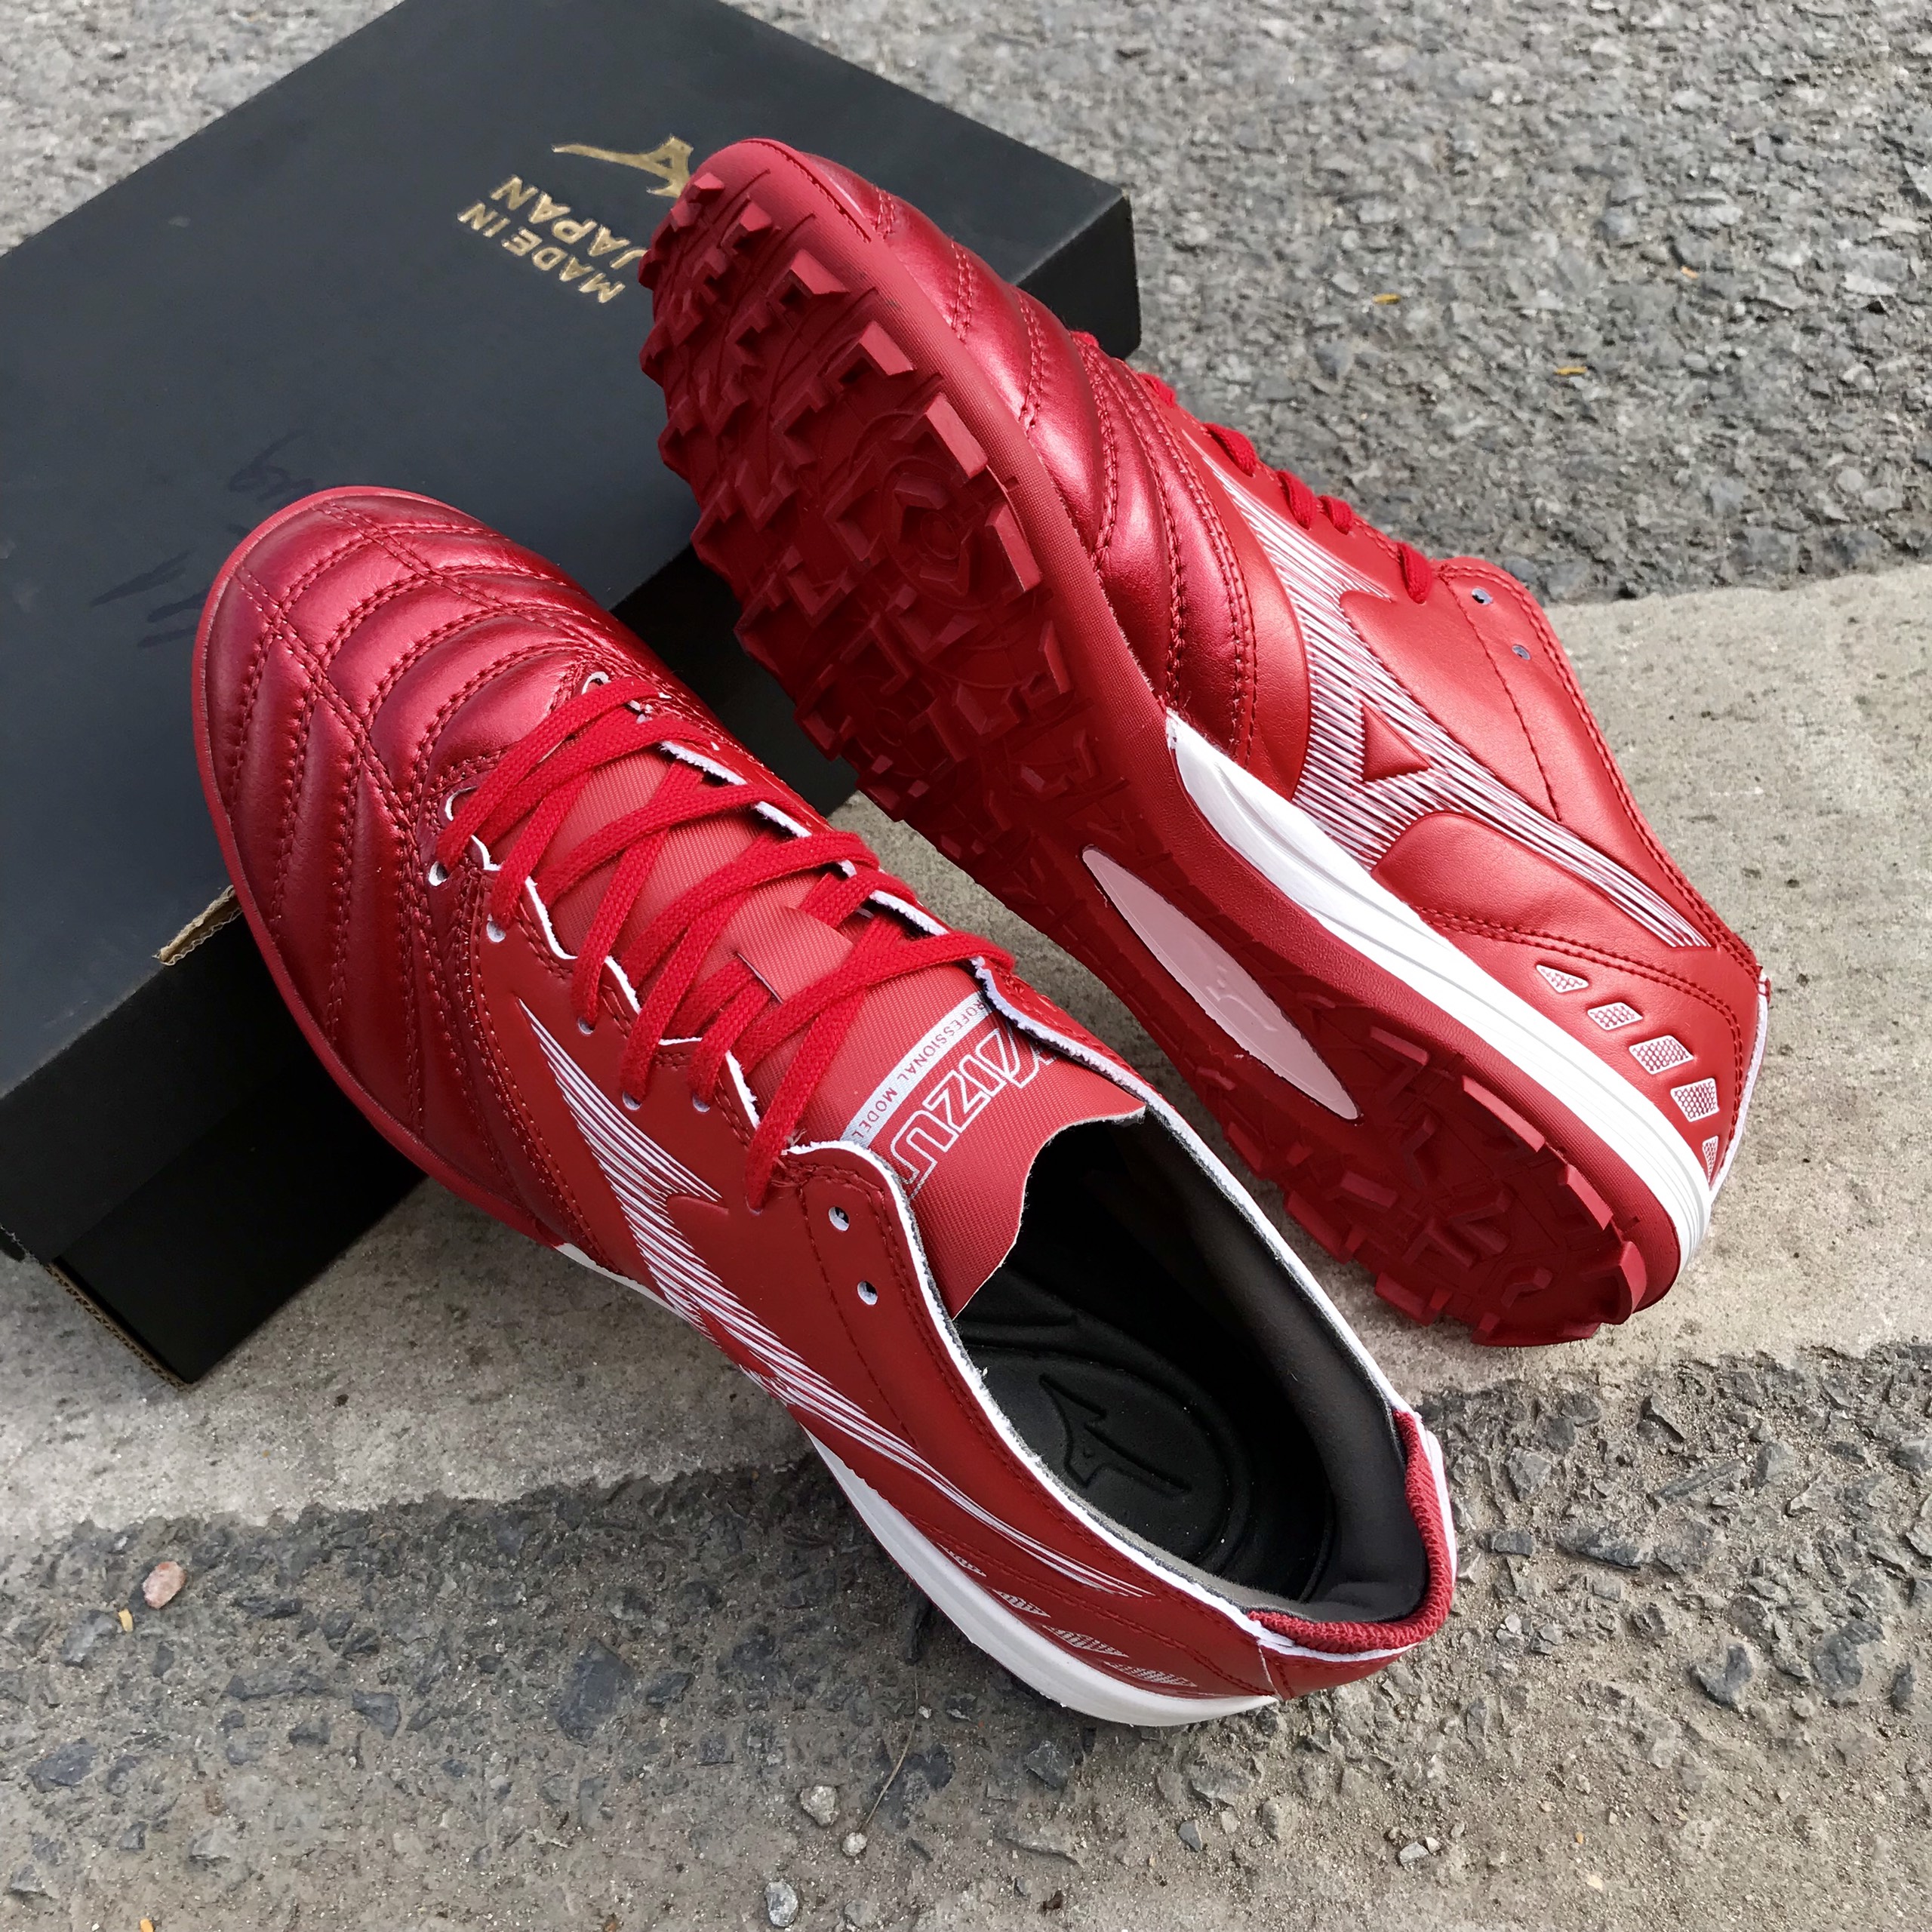 Mẫu giày đá bóng MZN Neo 3 Pro cao cấp bộ đôi giày chất lượng cao 2022-2023